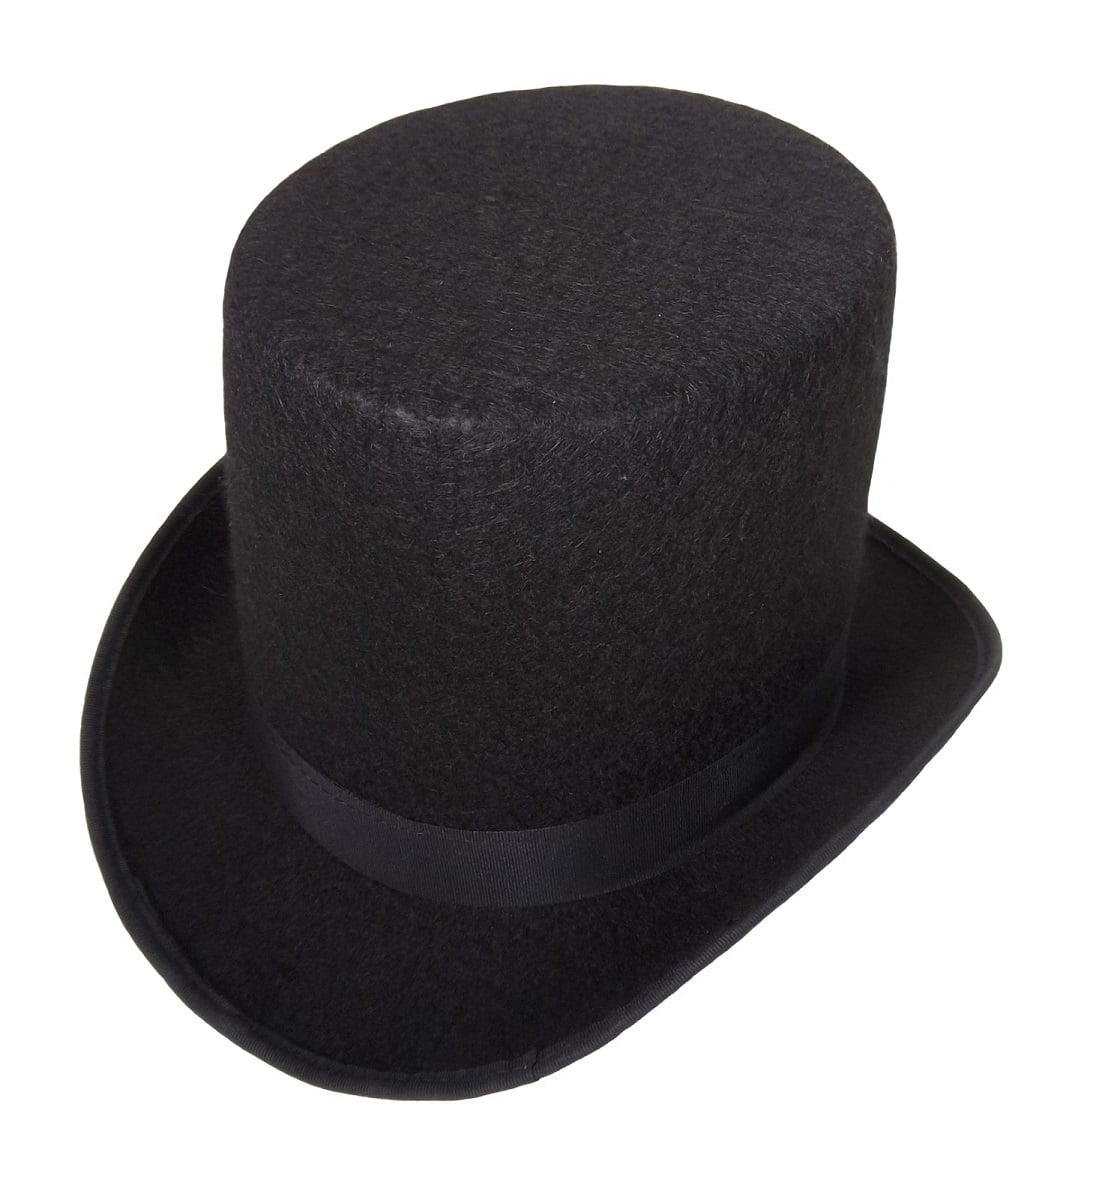 Black Top Hat Costume Party Hats Men Women ajzdnzvr Teens Adults Black Top Hat